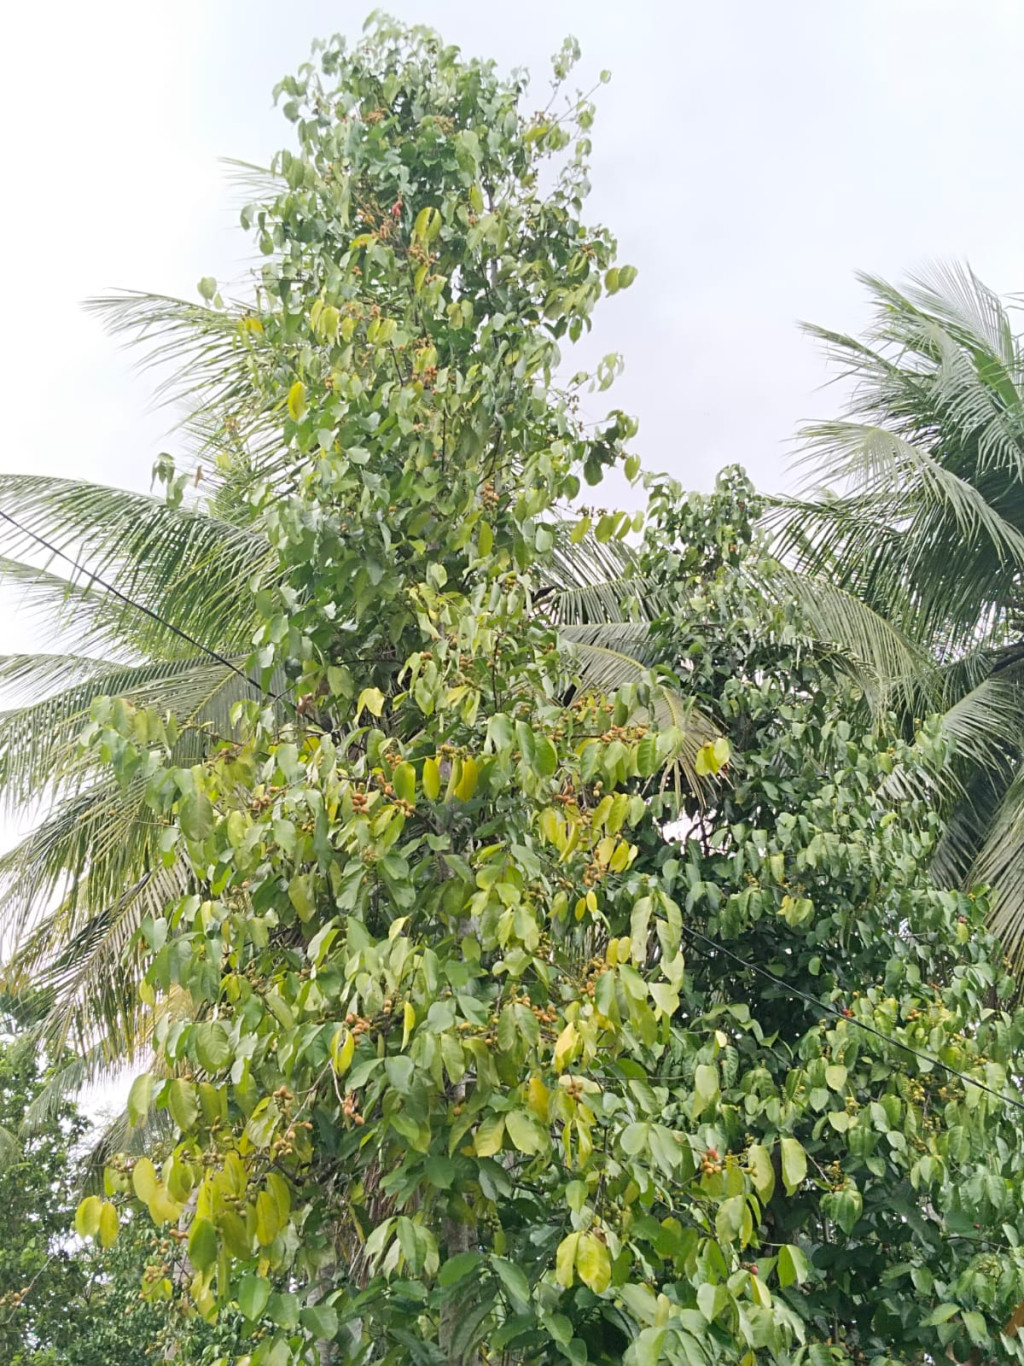 pohon Belinjo merupakan salah satu sumber penghasilan warga desa dayah leubue